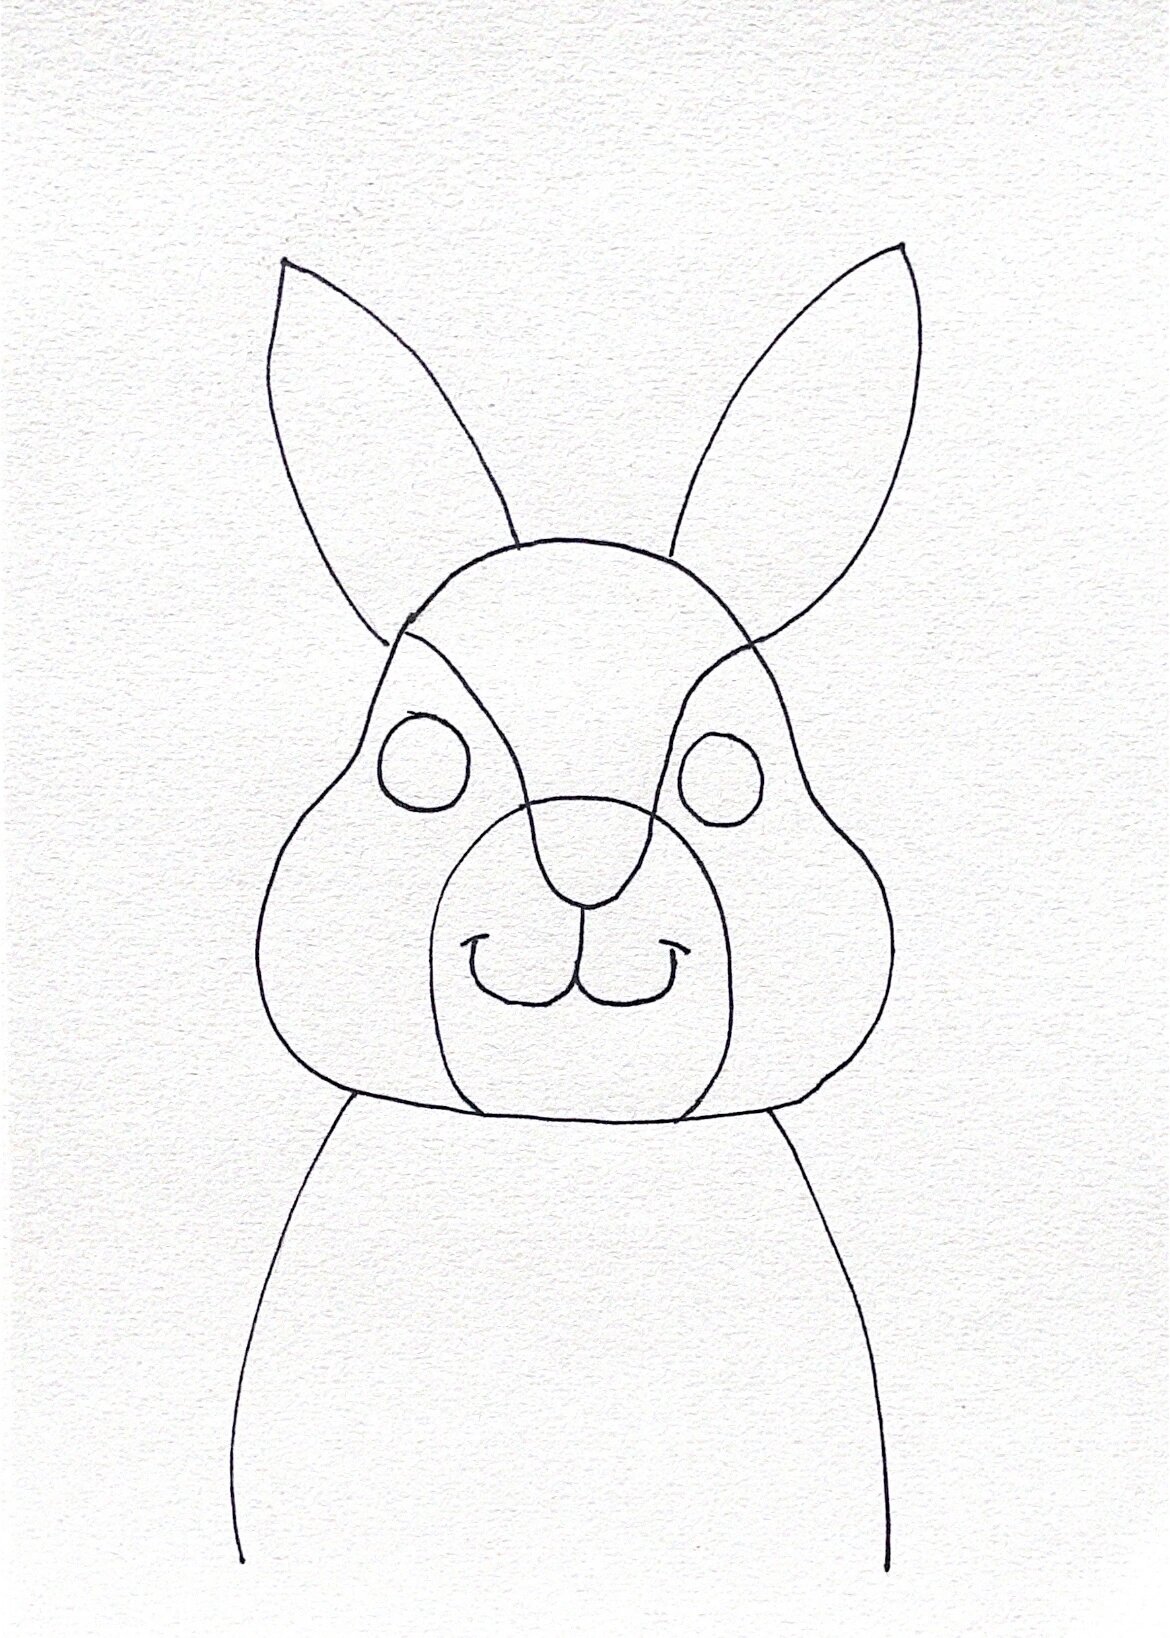 超级简单的小兔子,特别适合初学的宝宝们呀,一起来画画吧